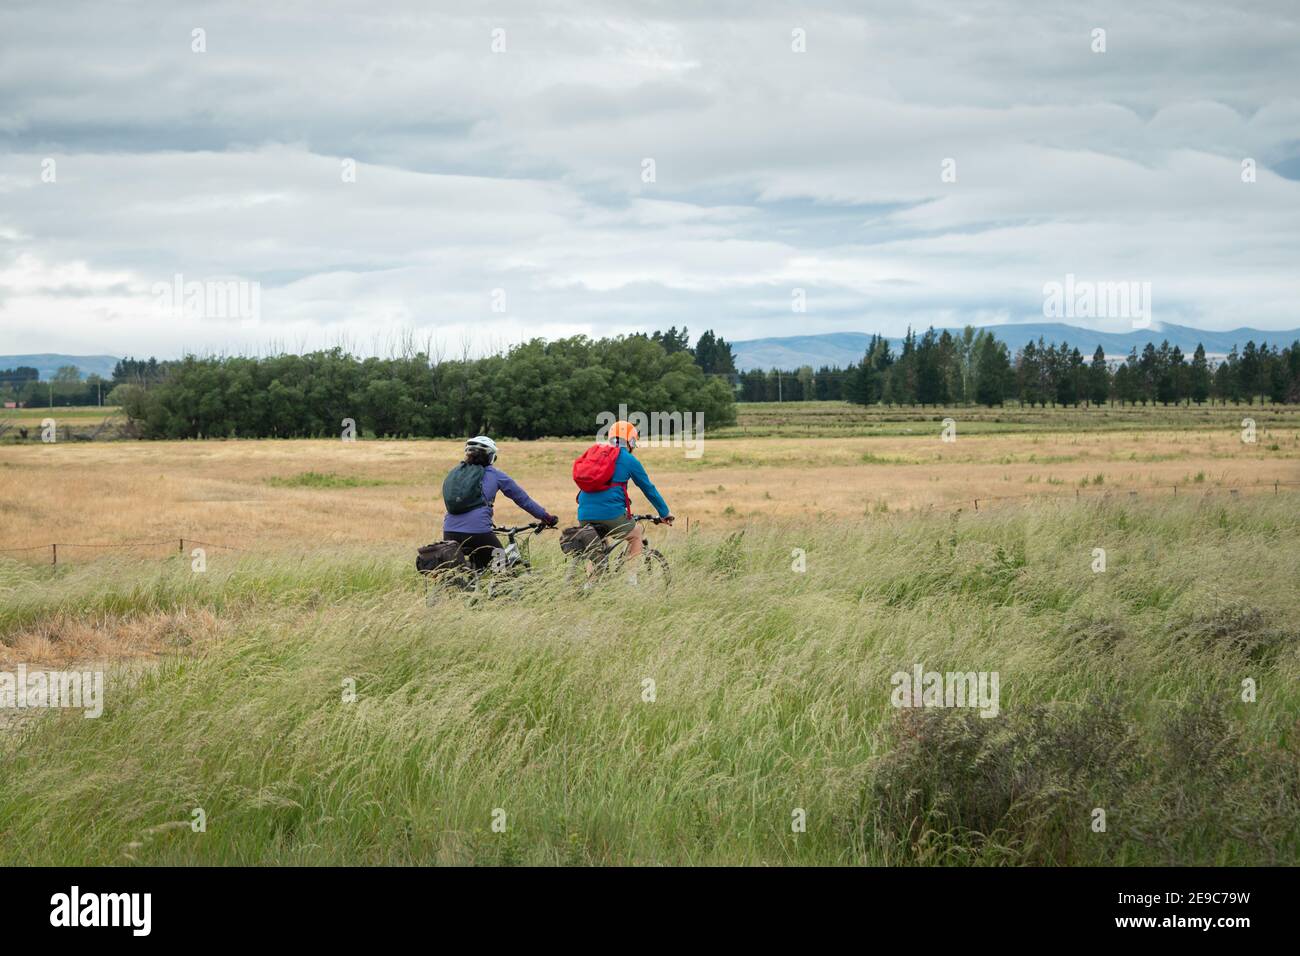 Zwei Radfahrer fahren auf dem Otago Central Rail Trail zwischen dem Feld des langen Grases, das im Wind weht, South Island, Neuseeland Stockfoto